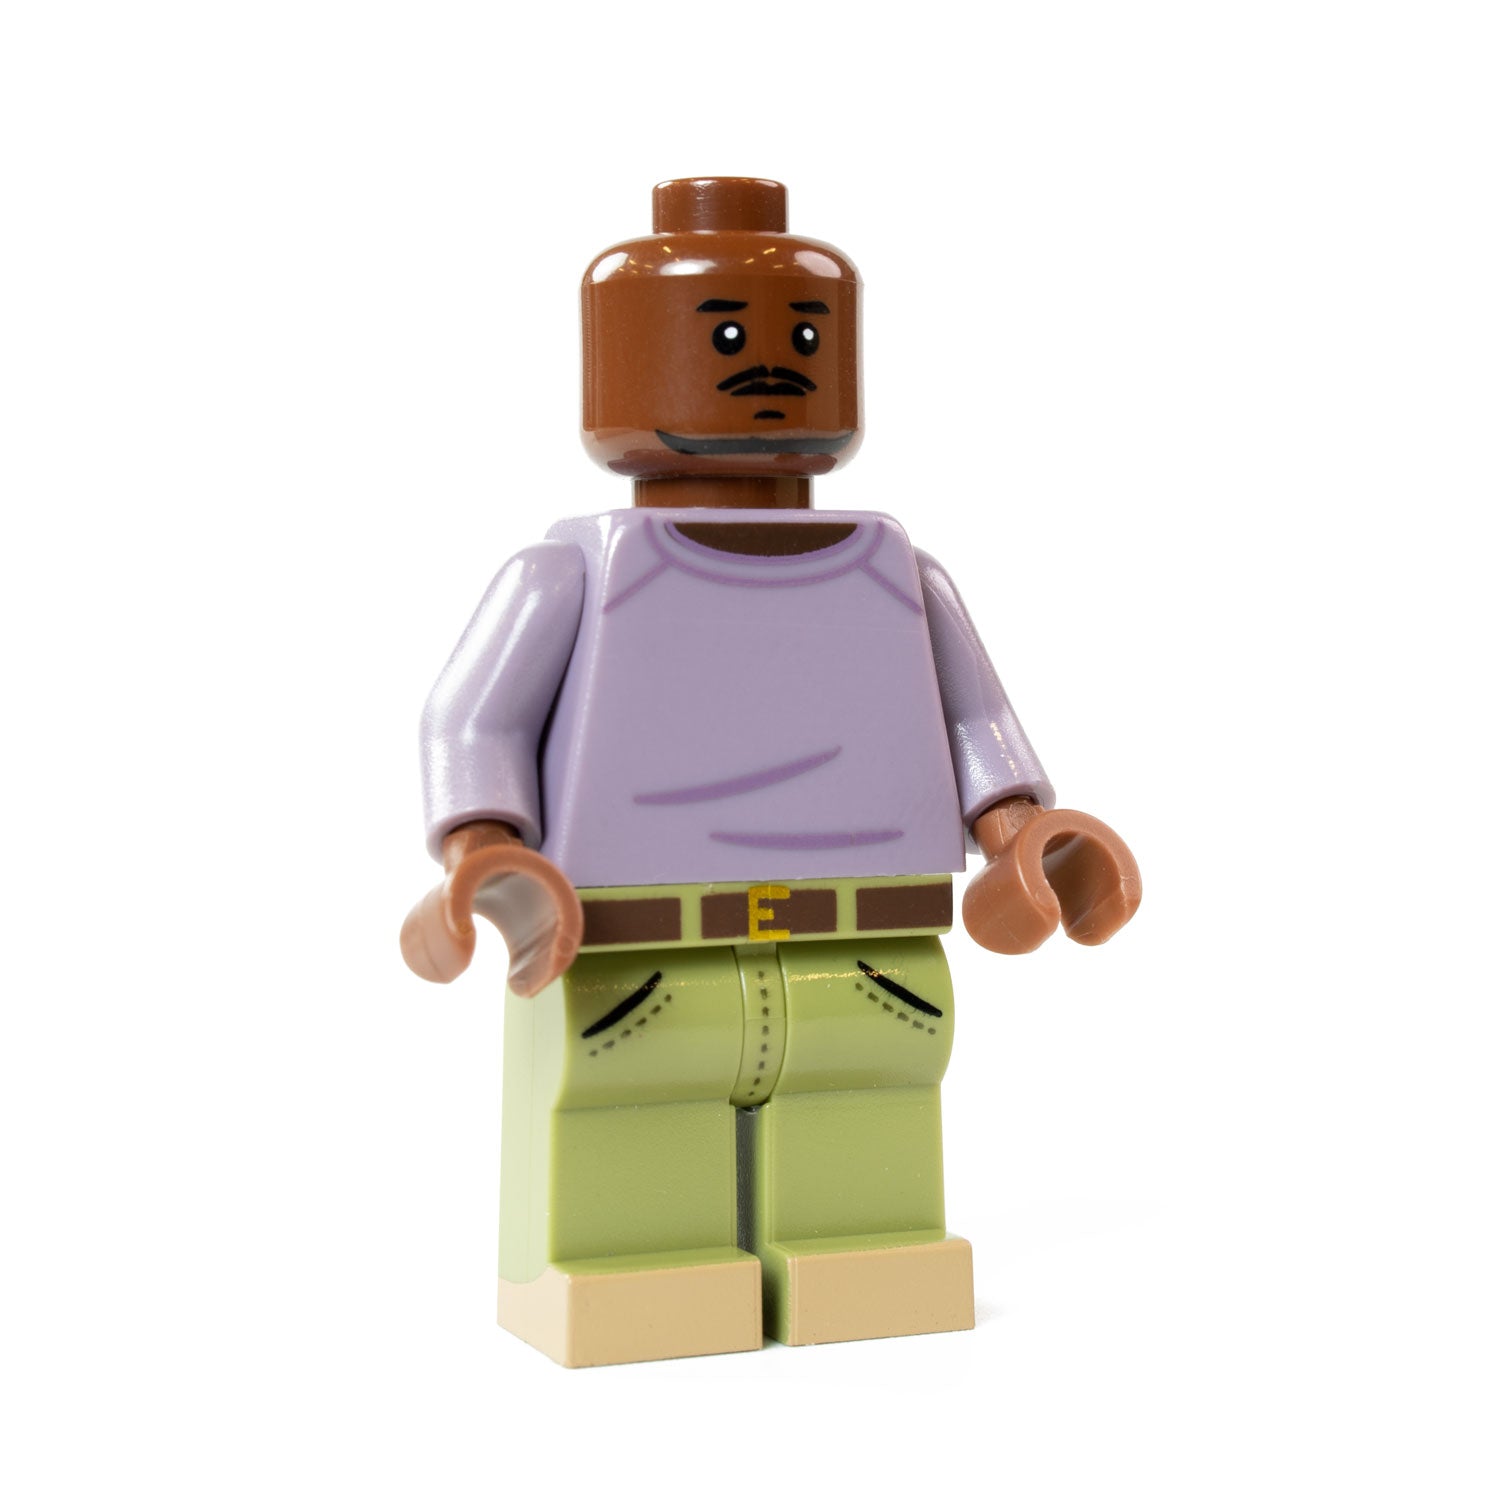 Custom Printed Lego - Brawling Buddy - The Minifig Co.